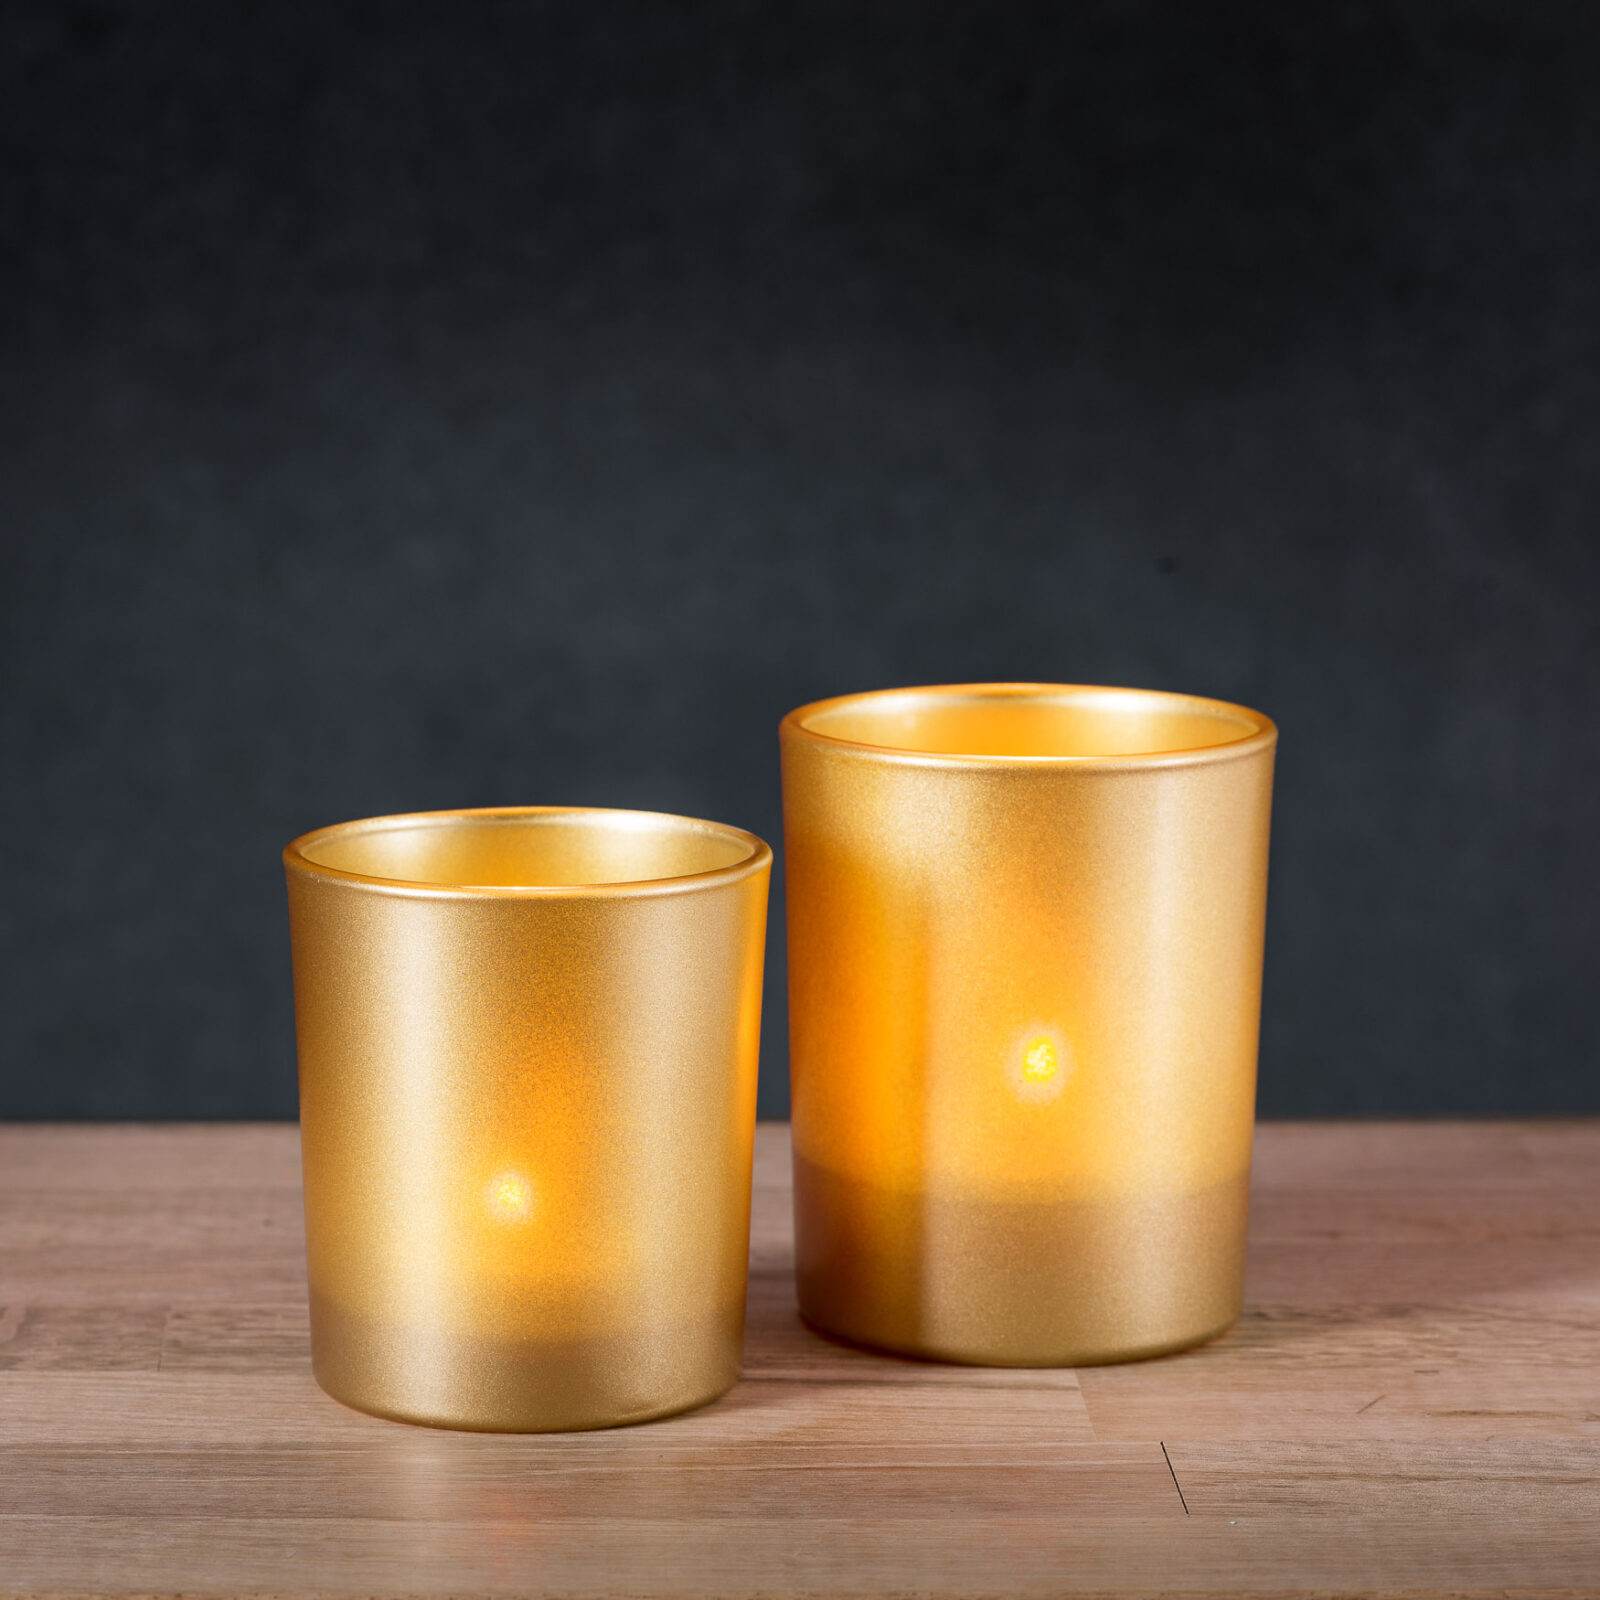 Połyskująca świeczka w złotym pojemniku